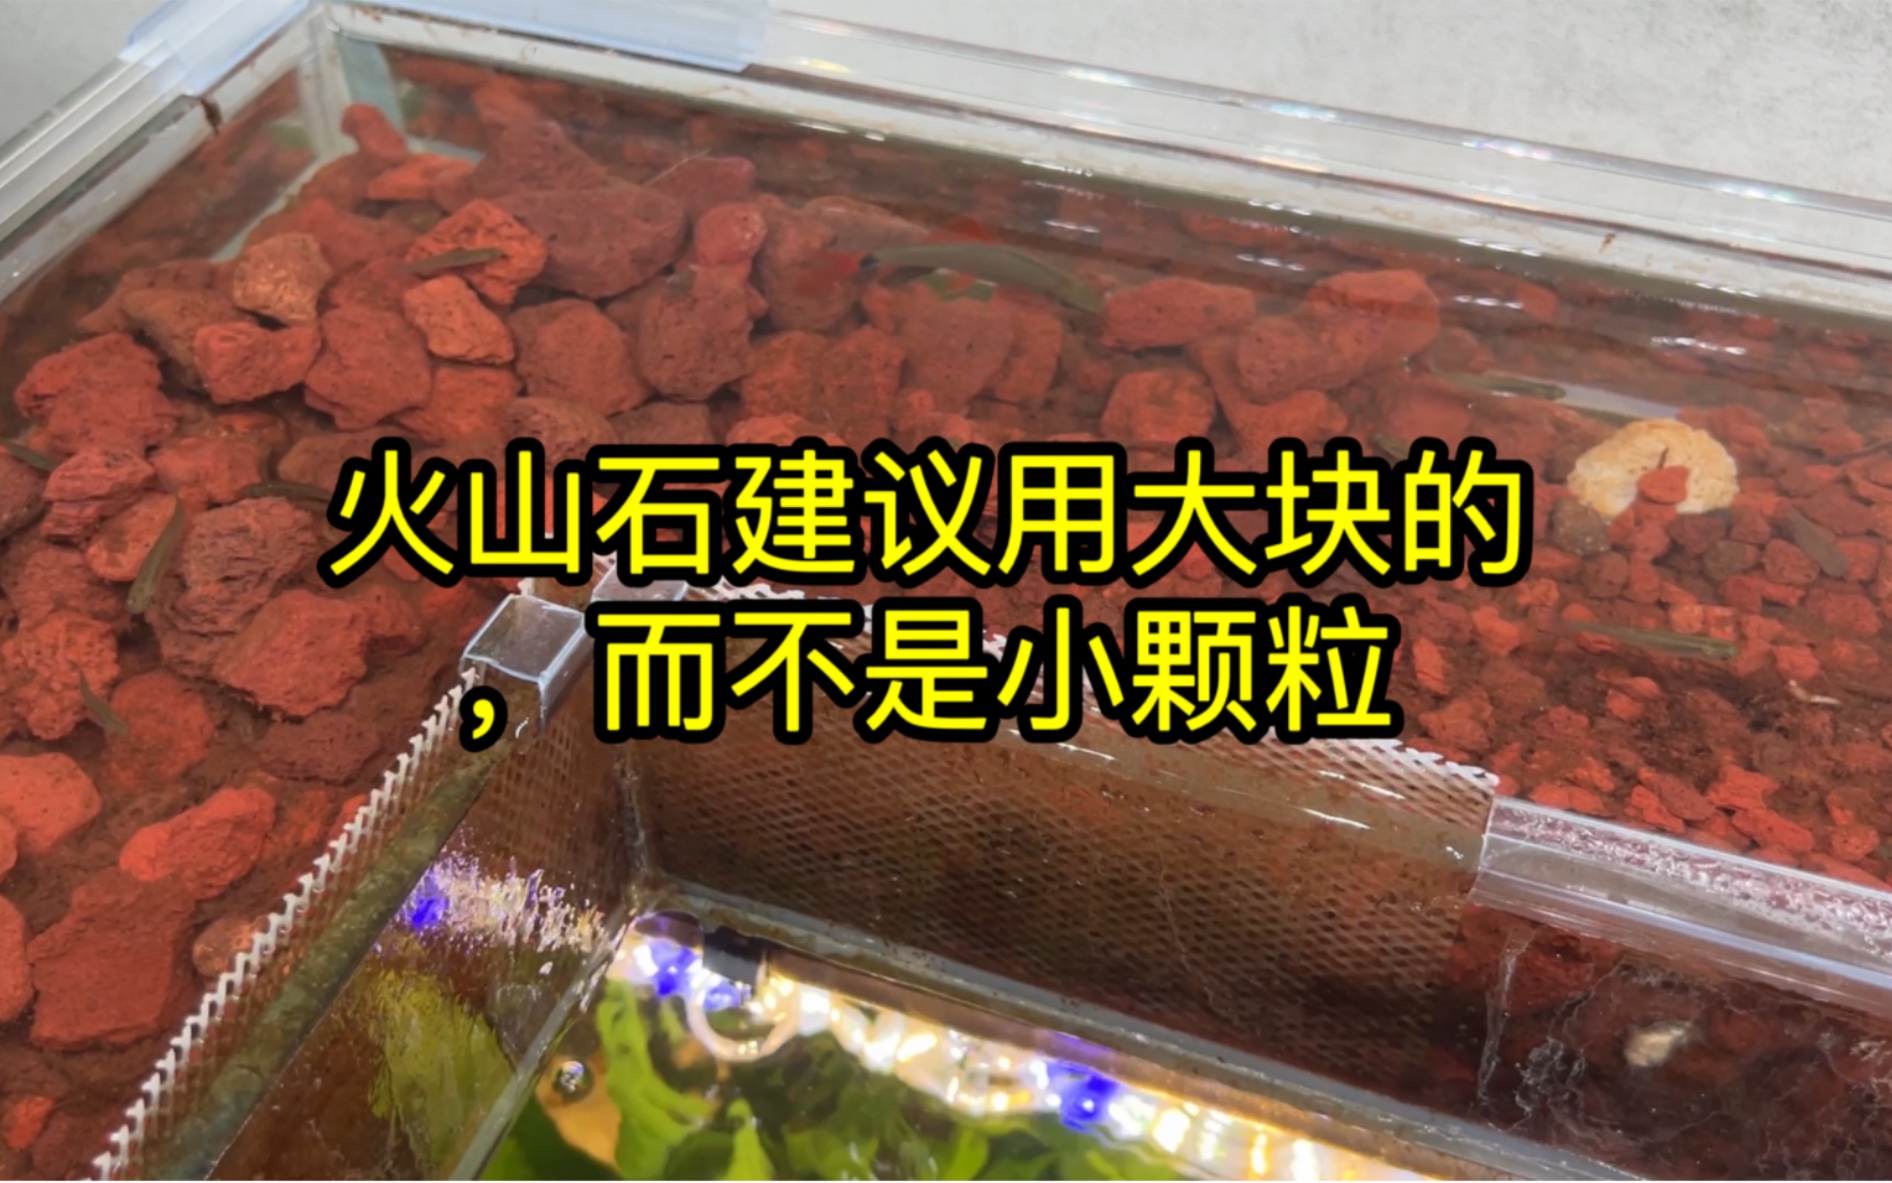 鱼缸别再用几毫米火山石了，买几厘米大块的吧，效果更好还方便清洗